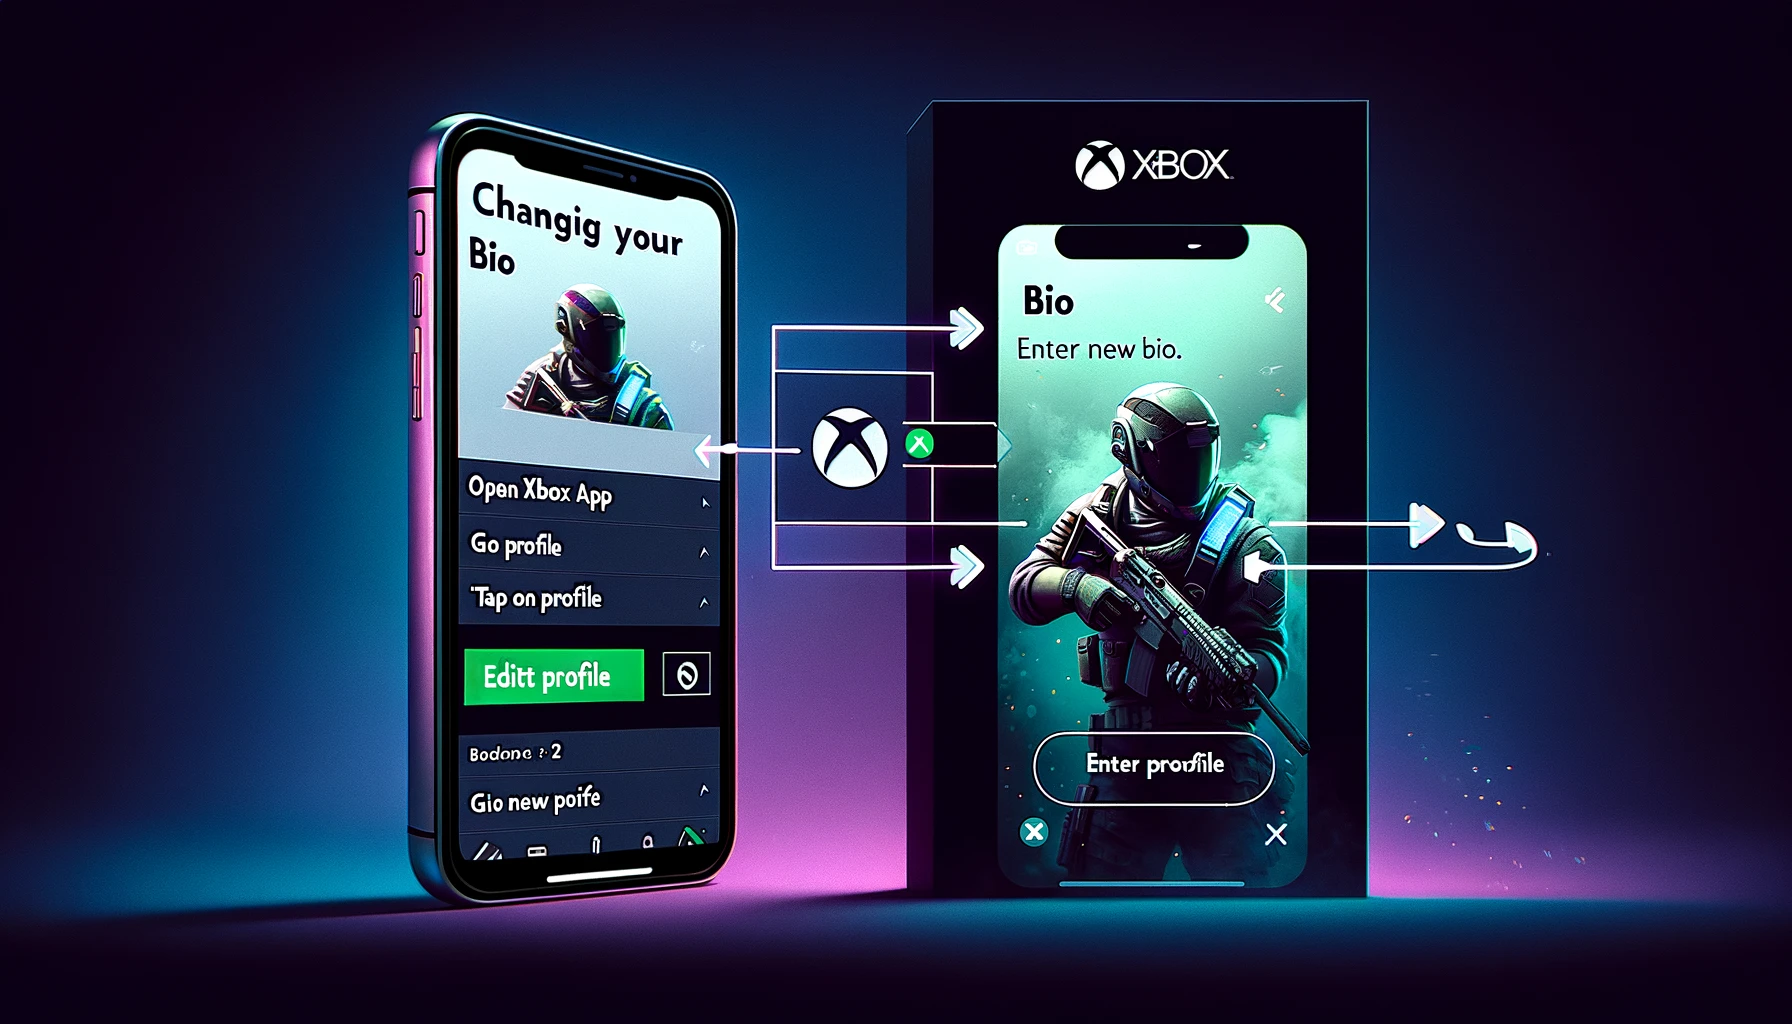 How to Change Bio on Xbox App